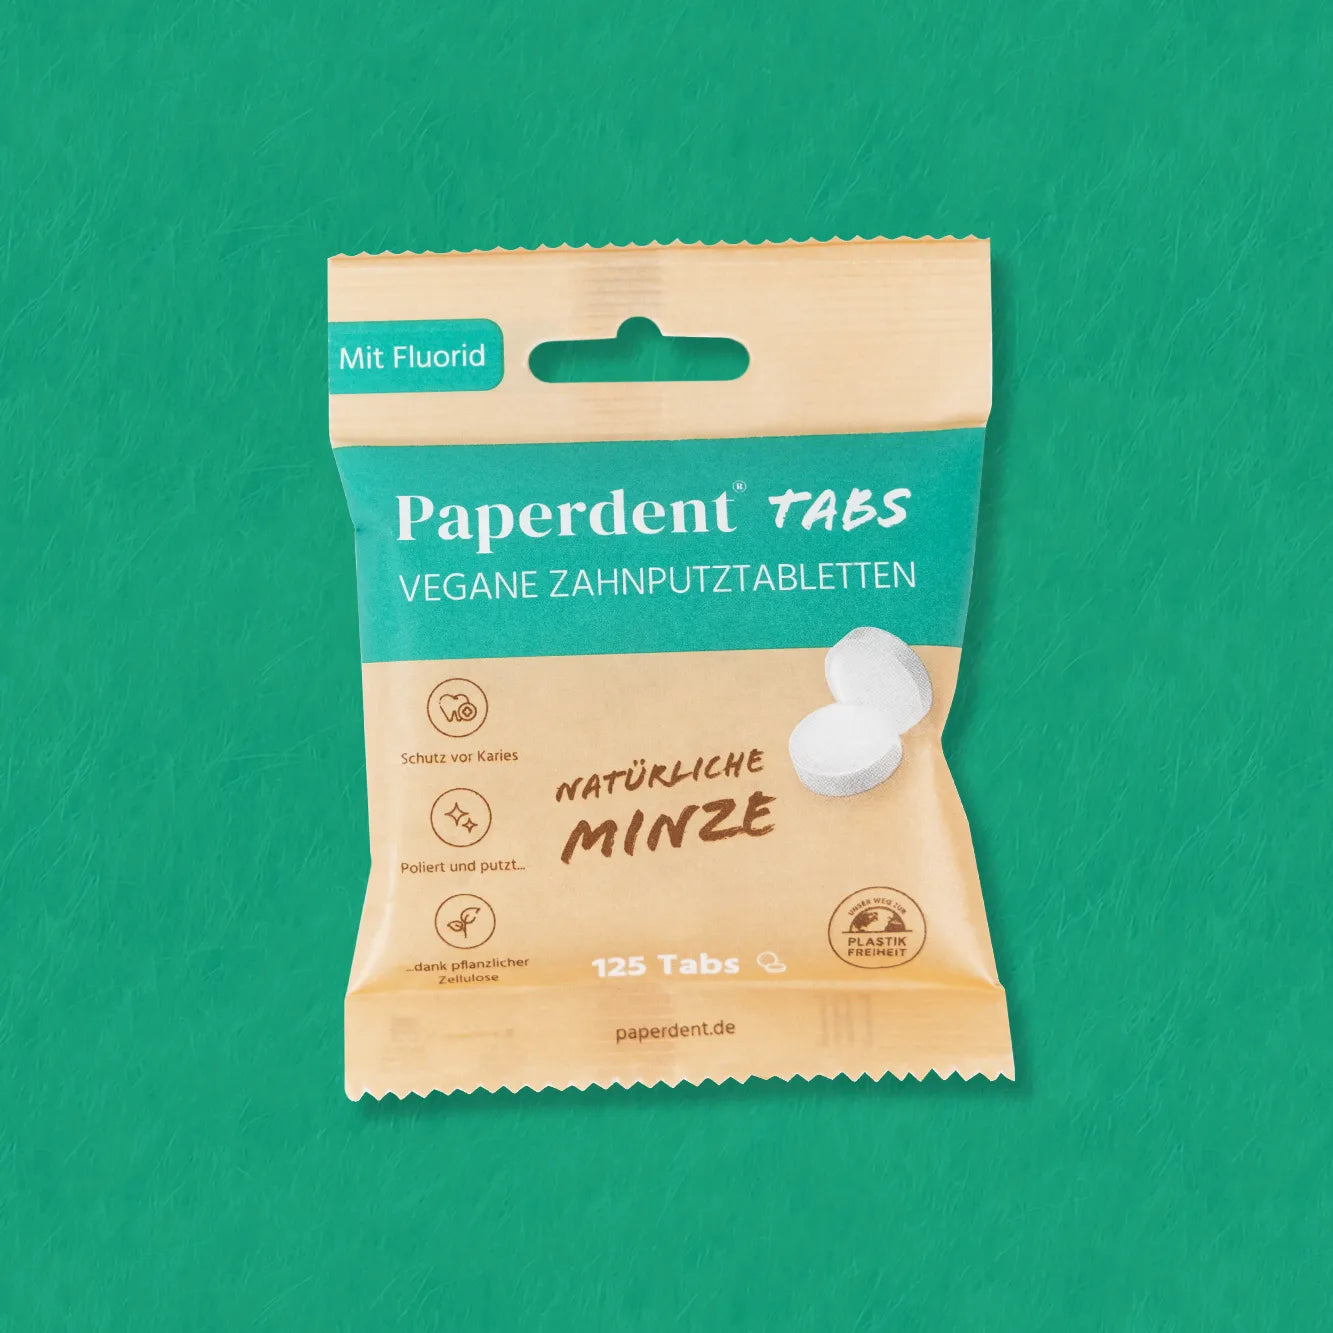 Paperdent Vegane Zahnputz-Tabletten grüner Hintergrund